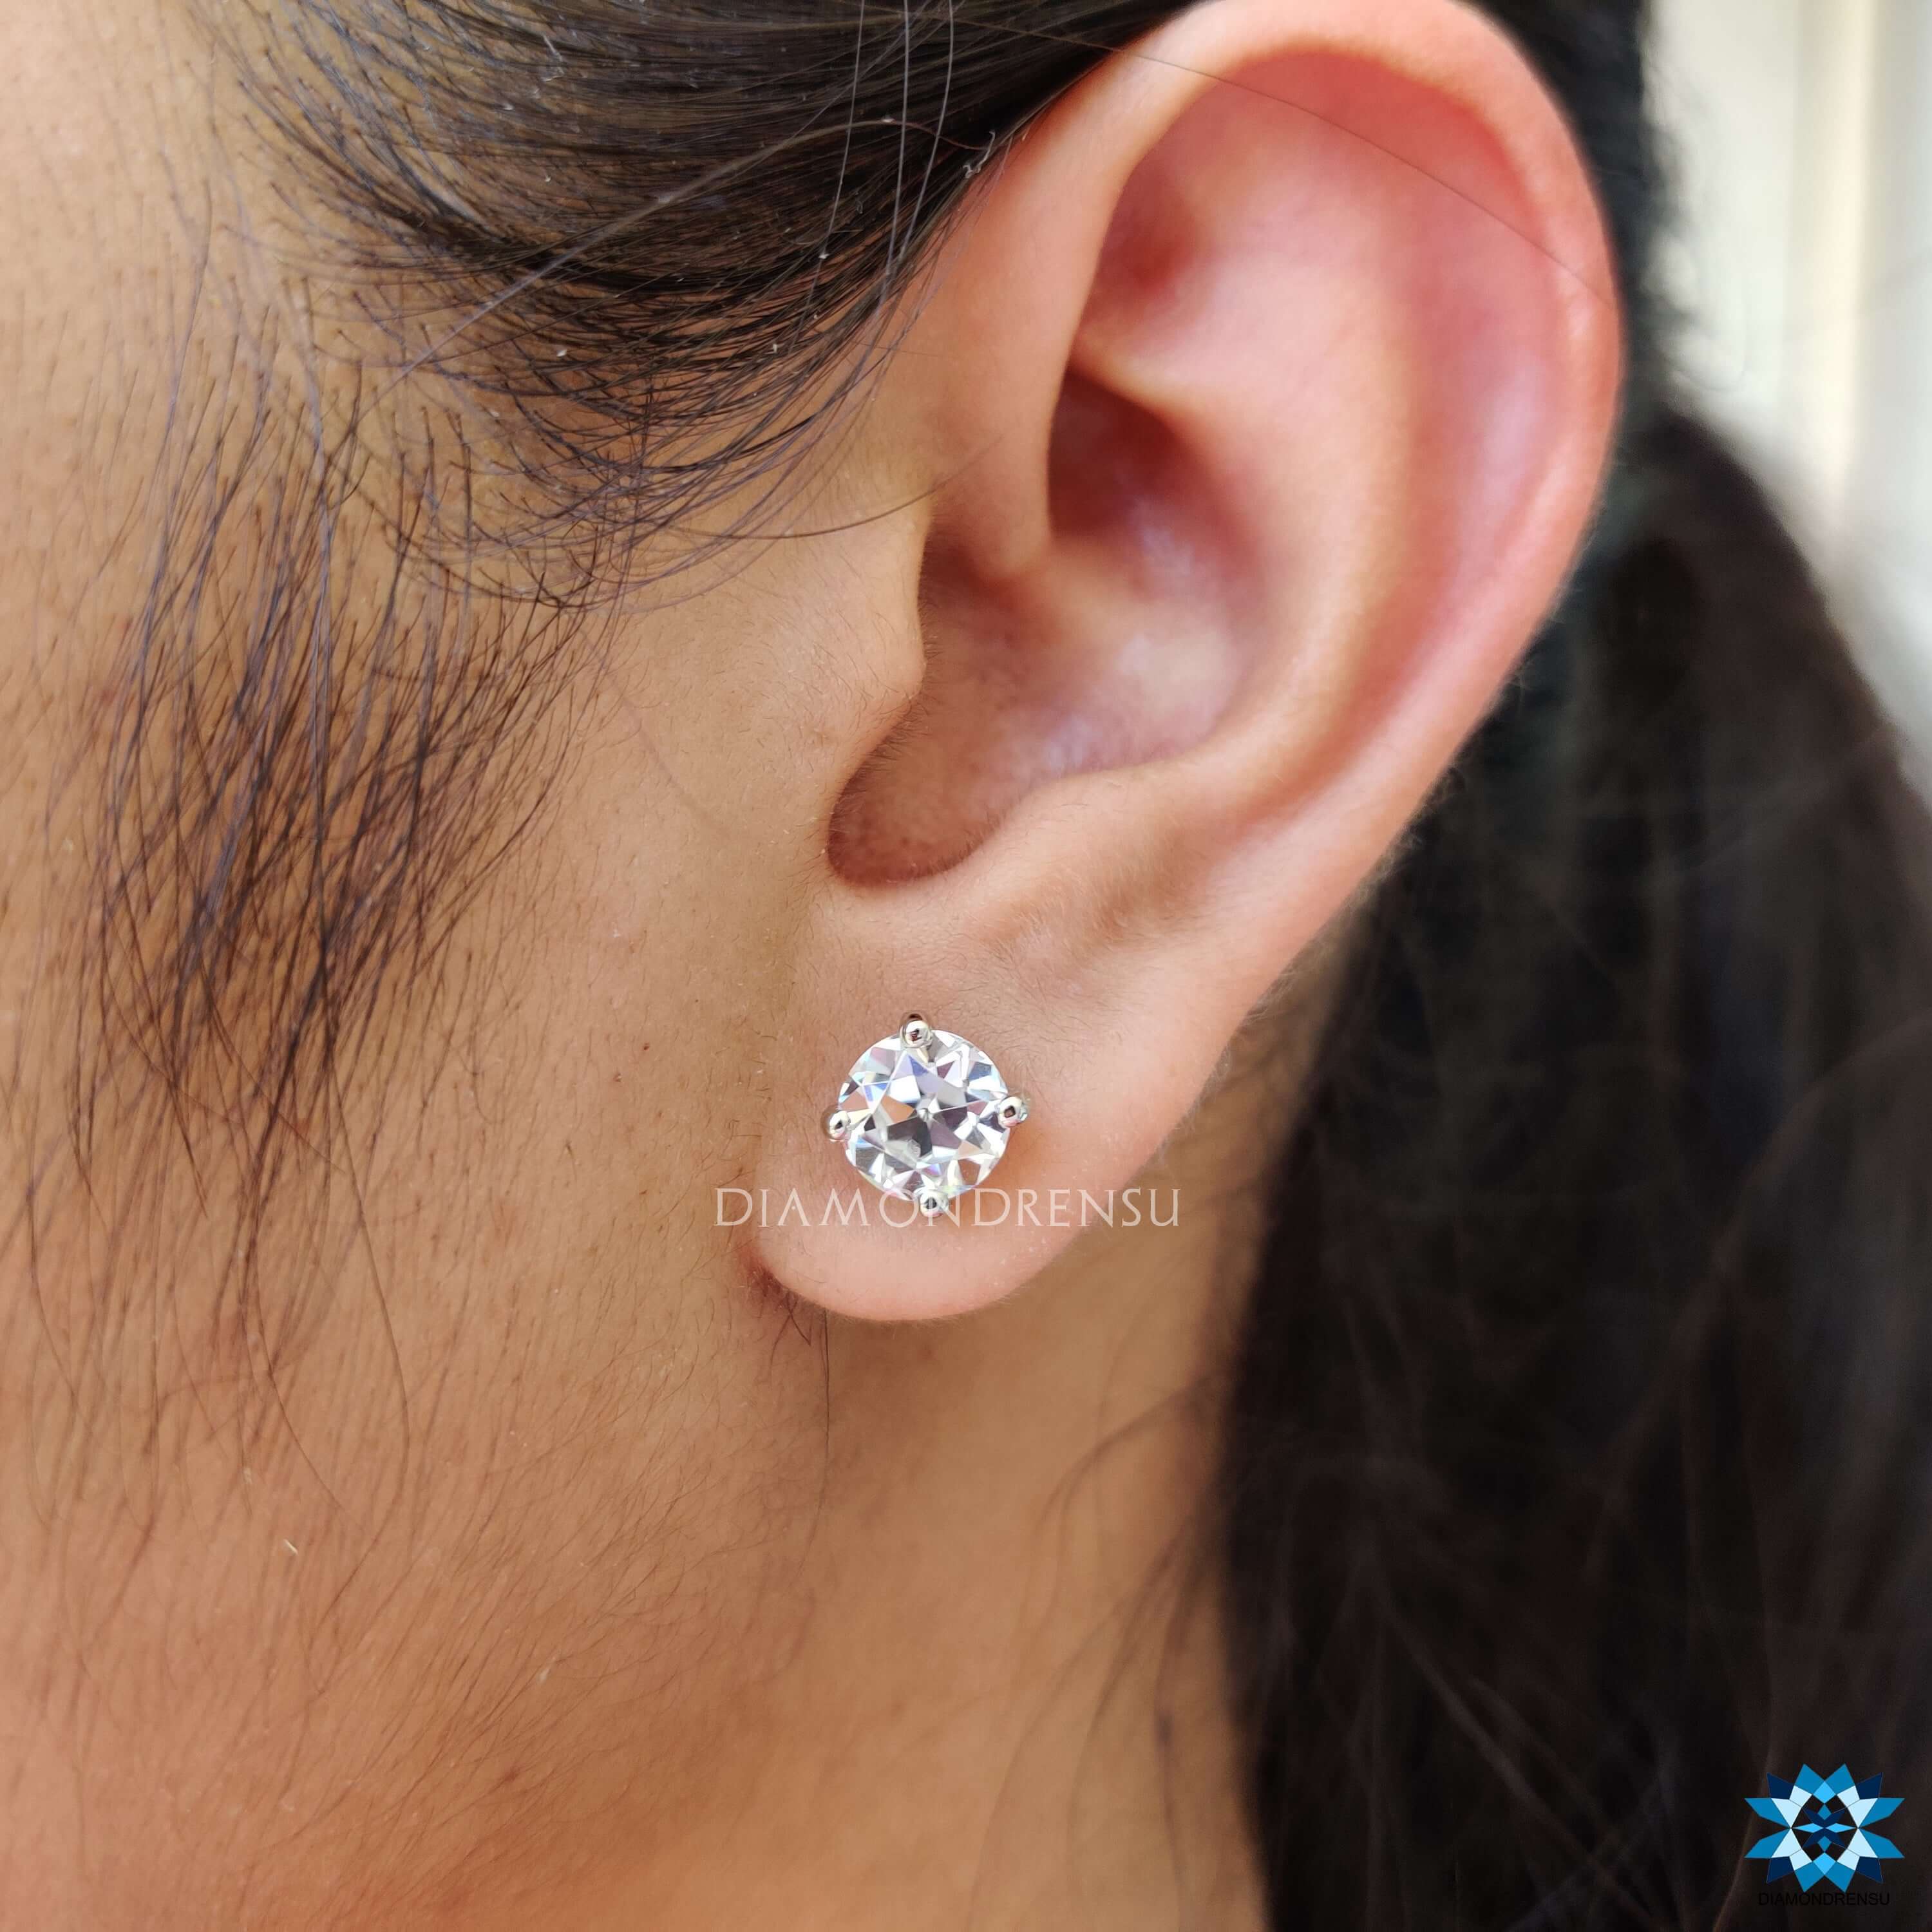 custom moissanite earrings - diamondrensu